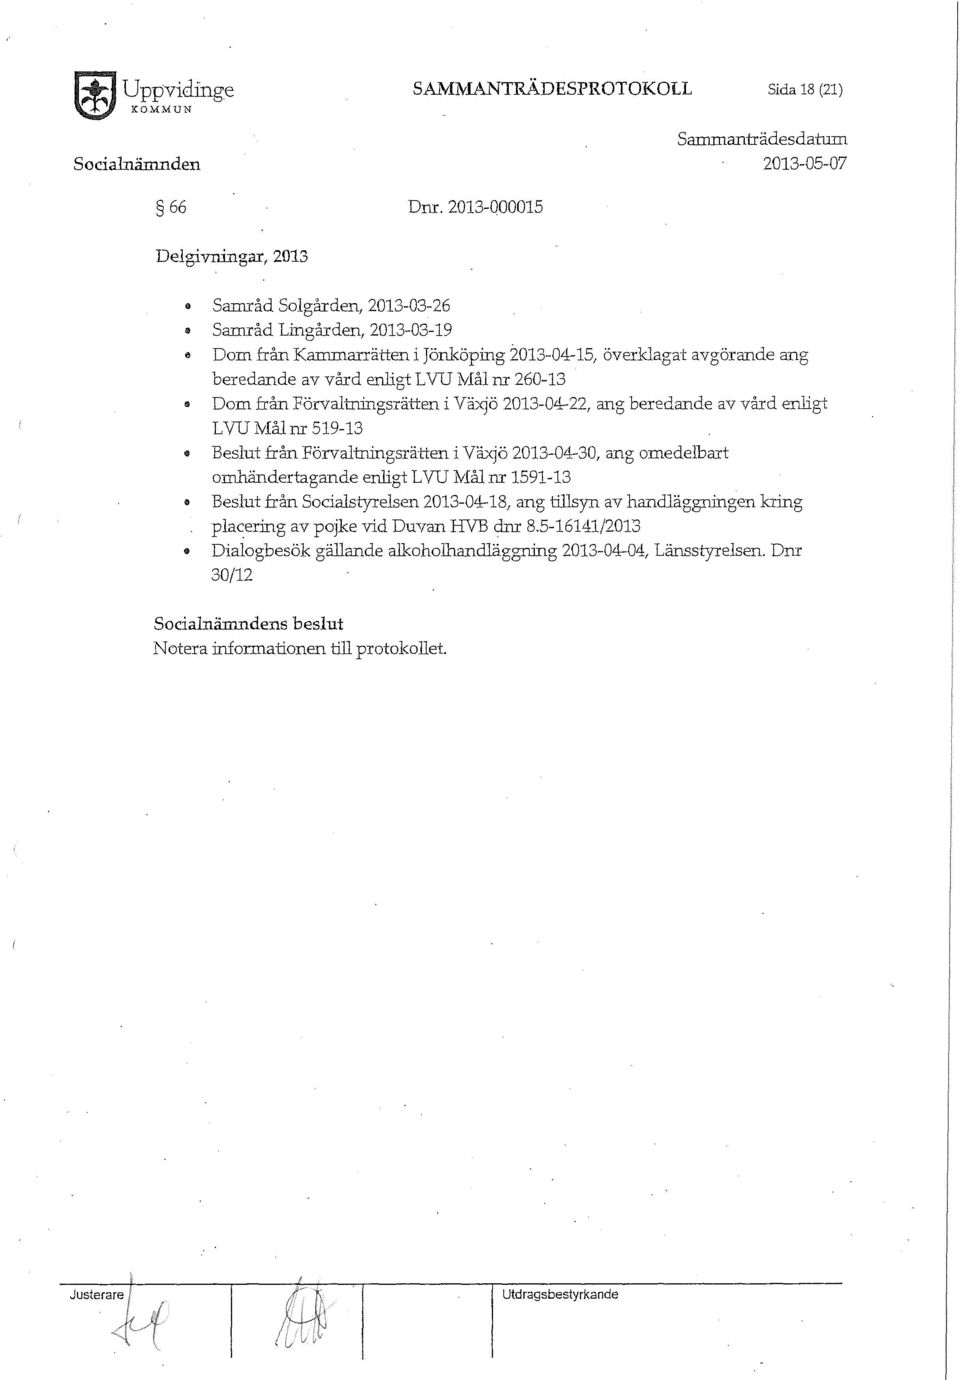 L VU Mål m 260-13 " Dom från Förvaltningsrätten i Växjö 2013-04-22, ang beredande av vård enligt LVUMålm 519-13 Beslut från Förvaltrringsrätien i Växjö 2013-04-30, ang omedelbart